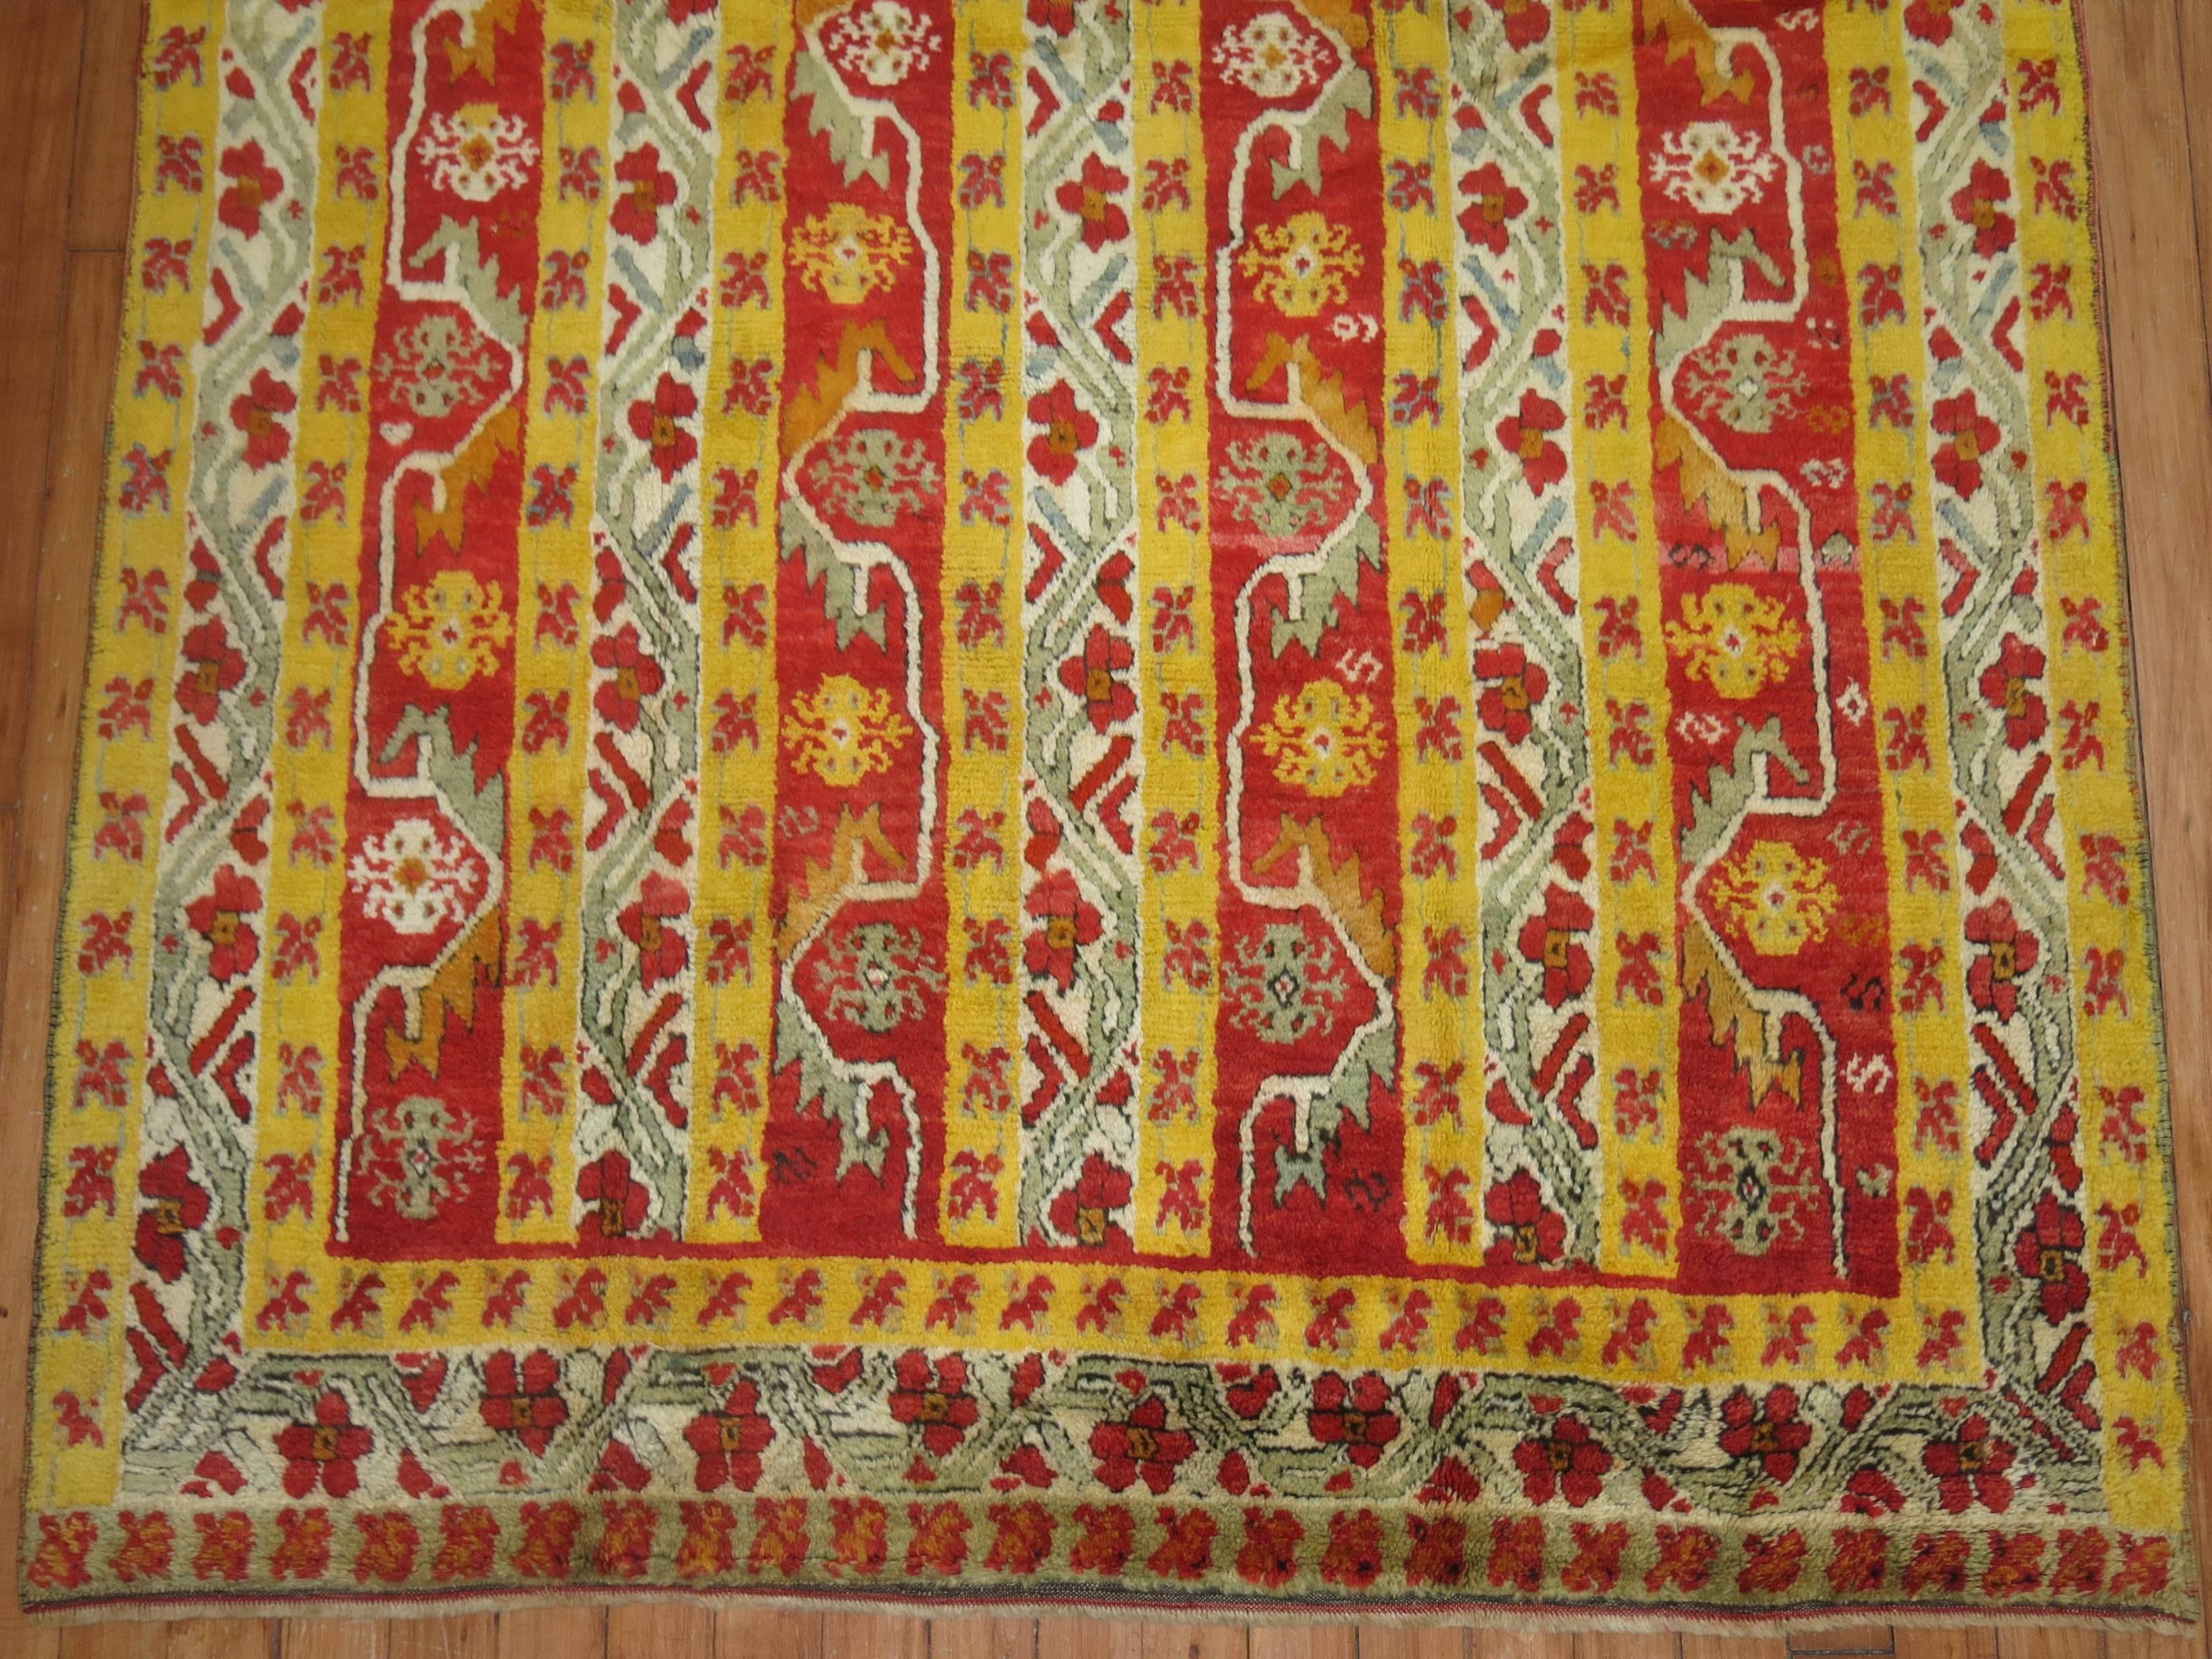 Faszinierender türkischer Melas-Teppich aus dem frühen 20. Jahrhundert in leuchtendem Gelb und strahlendem Rot. Das vertikale Muster wurde geschickt gewebt und macht diesen Teppich zu einem sehr begehrten Dekorationsobjekt.